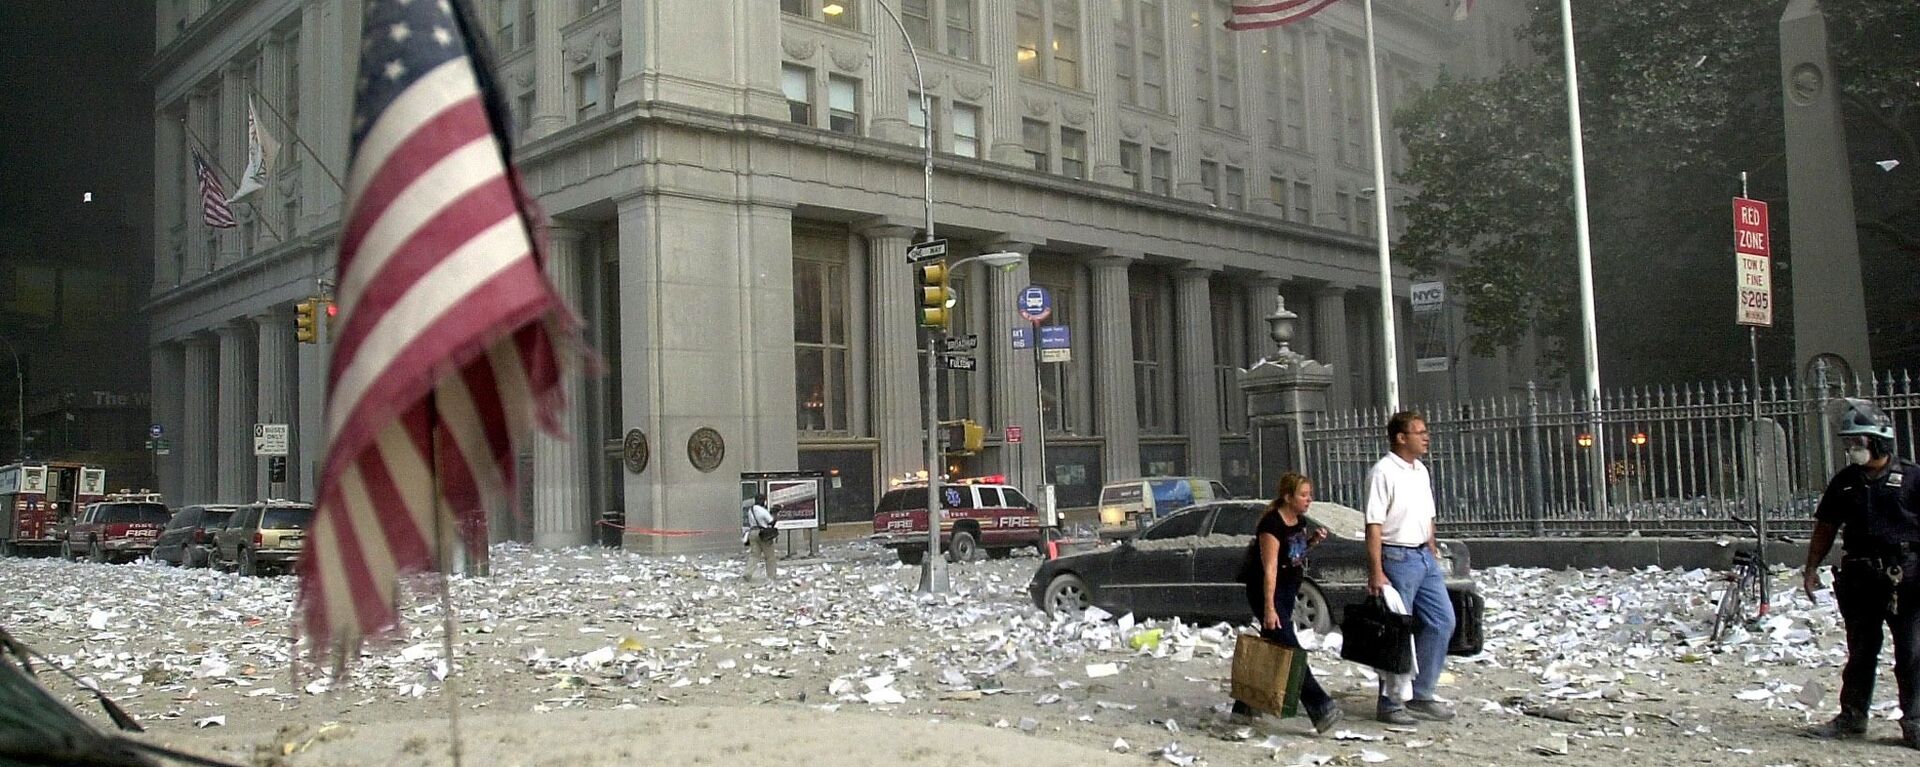 Терористички напад на Светски трговински центар у Њујорку 11. септембaра 2001. године  - Sputnik Србија, 1920, 11.09.2021